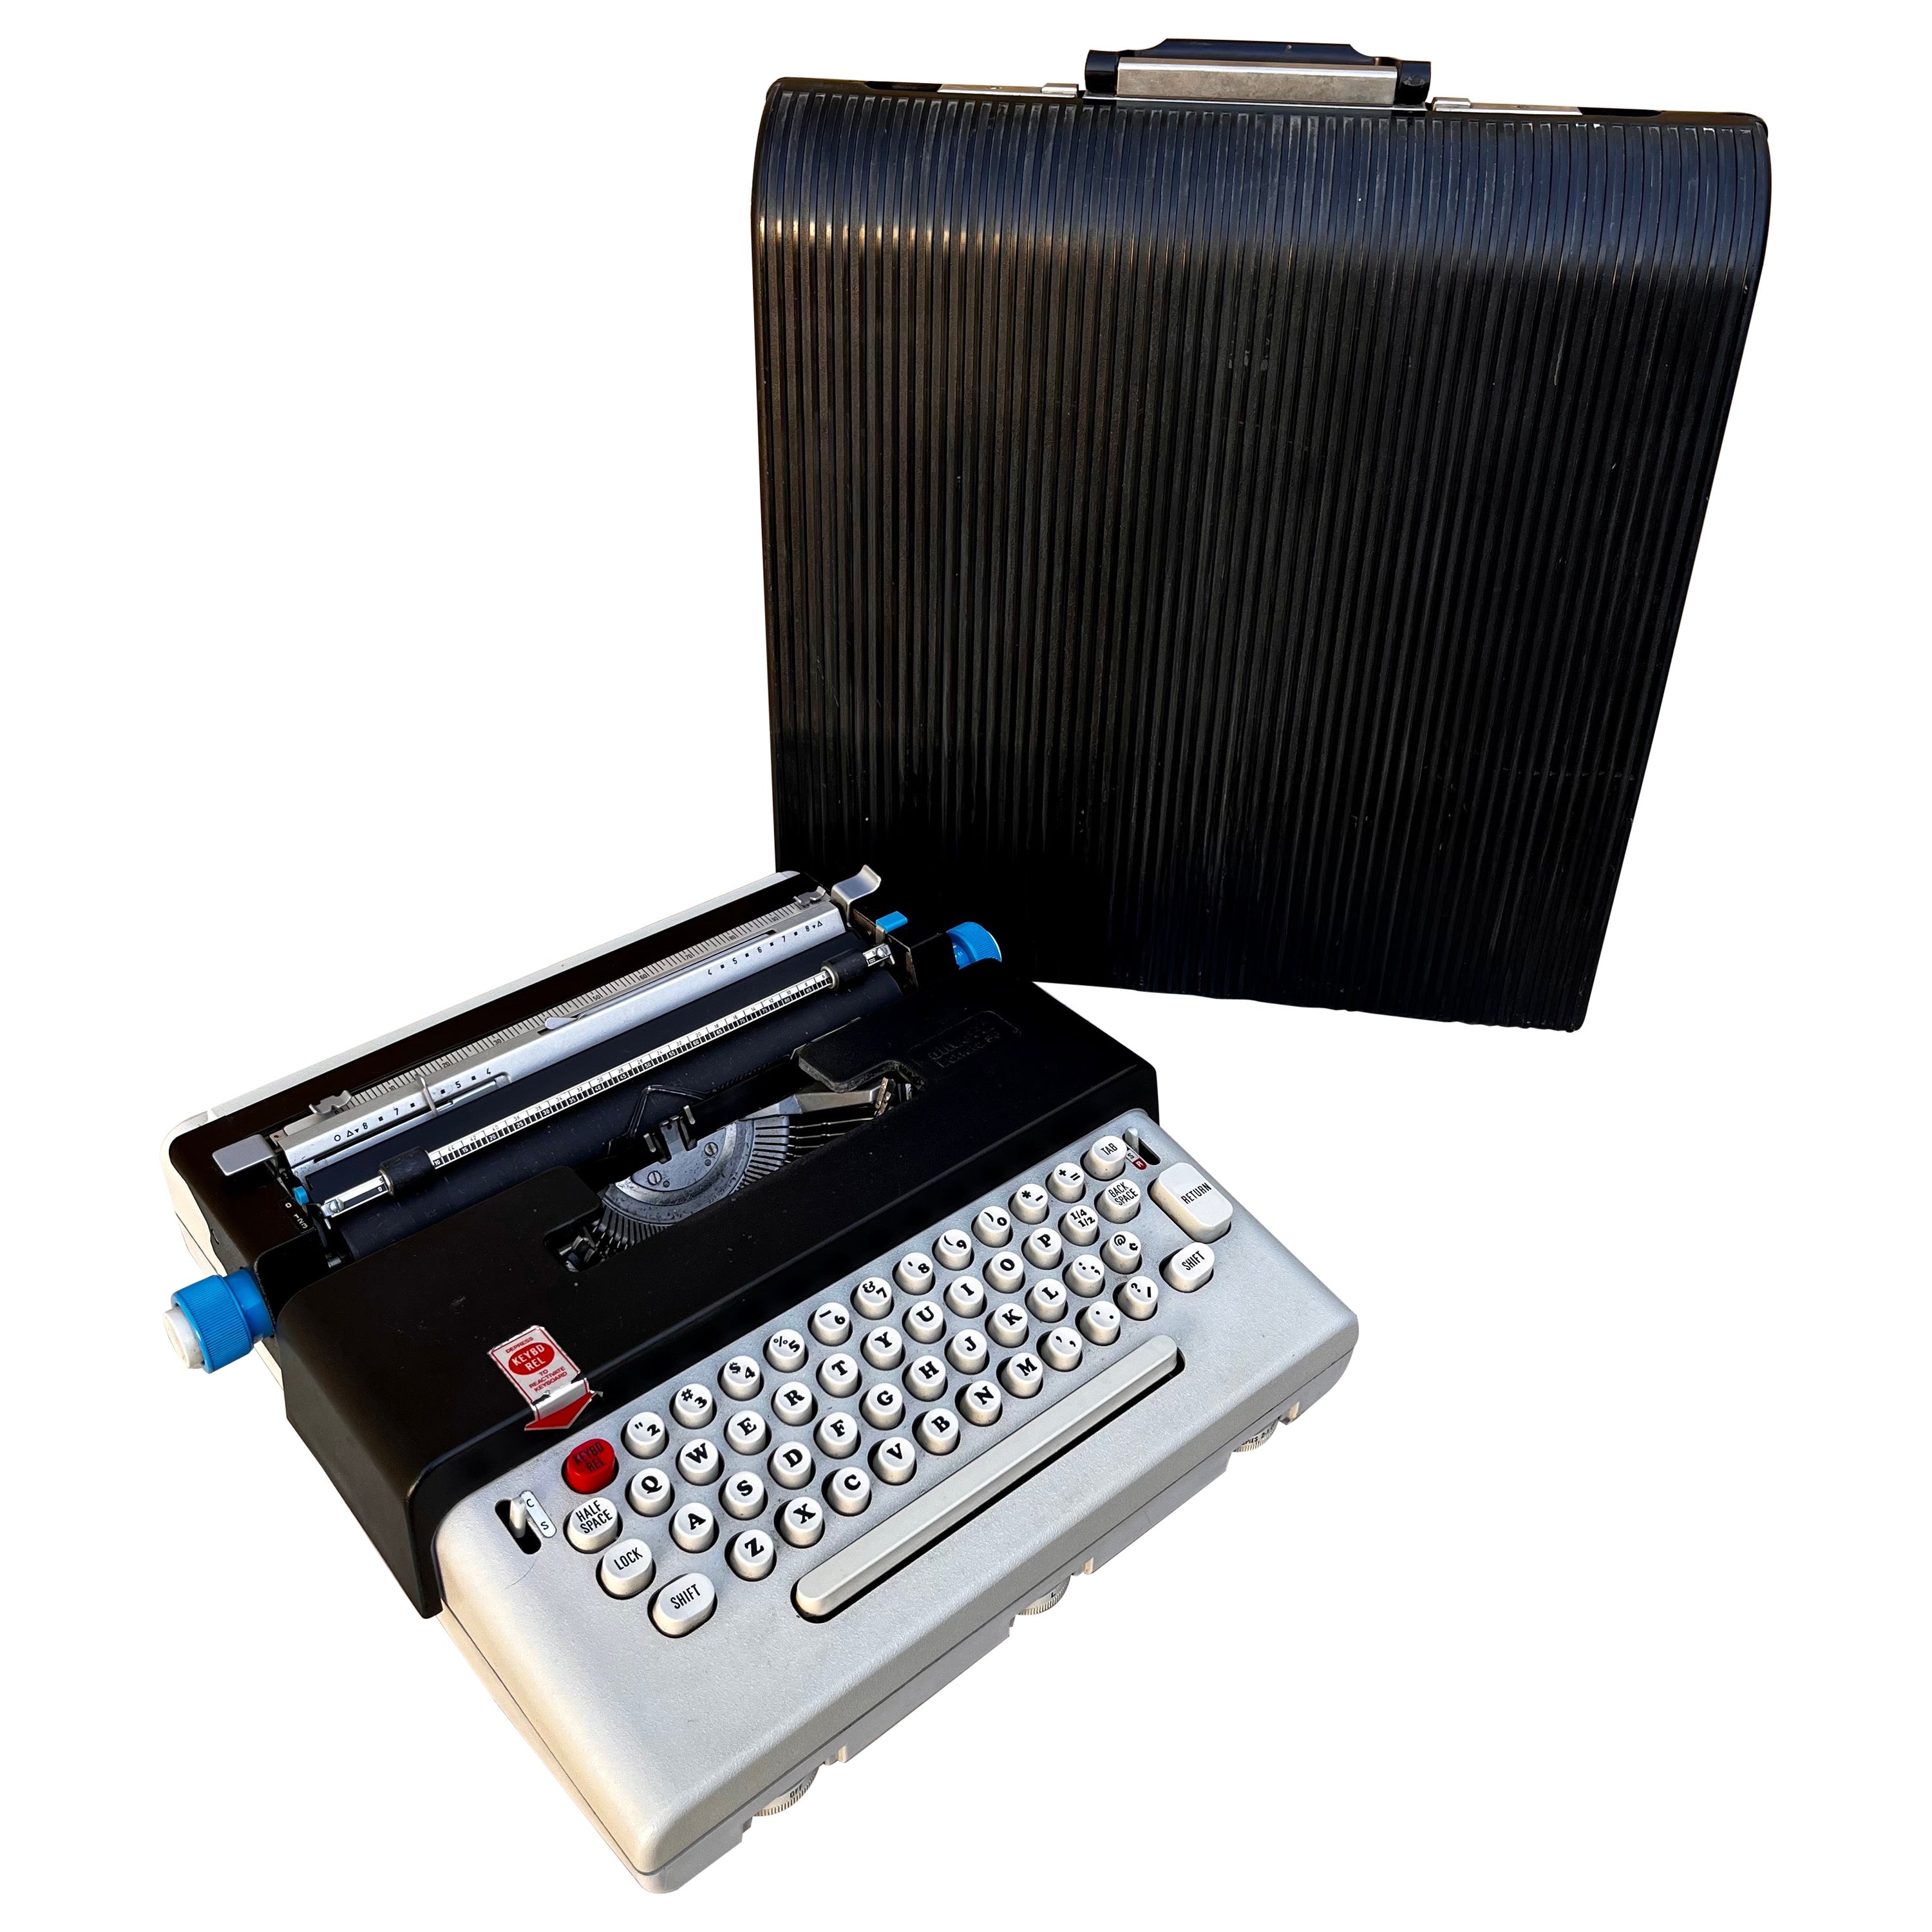 Machine à écrire portable Olivetti Lettera 36 Design/One par Ettore Sottsass. circa 1970s